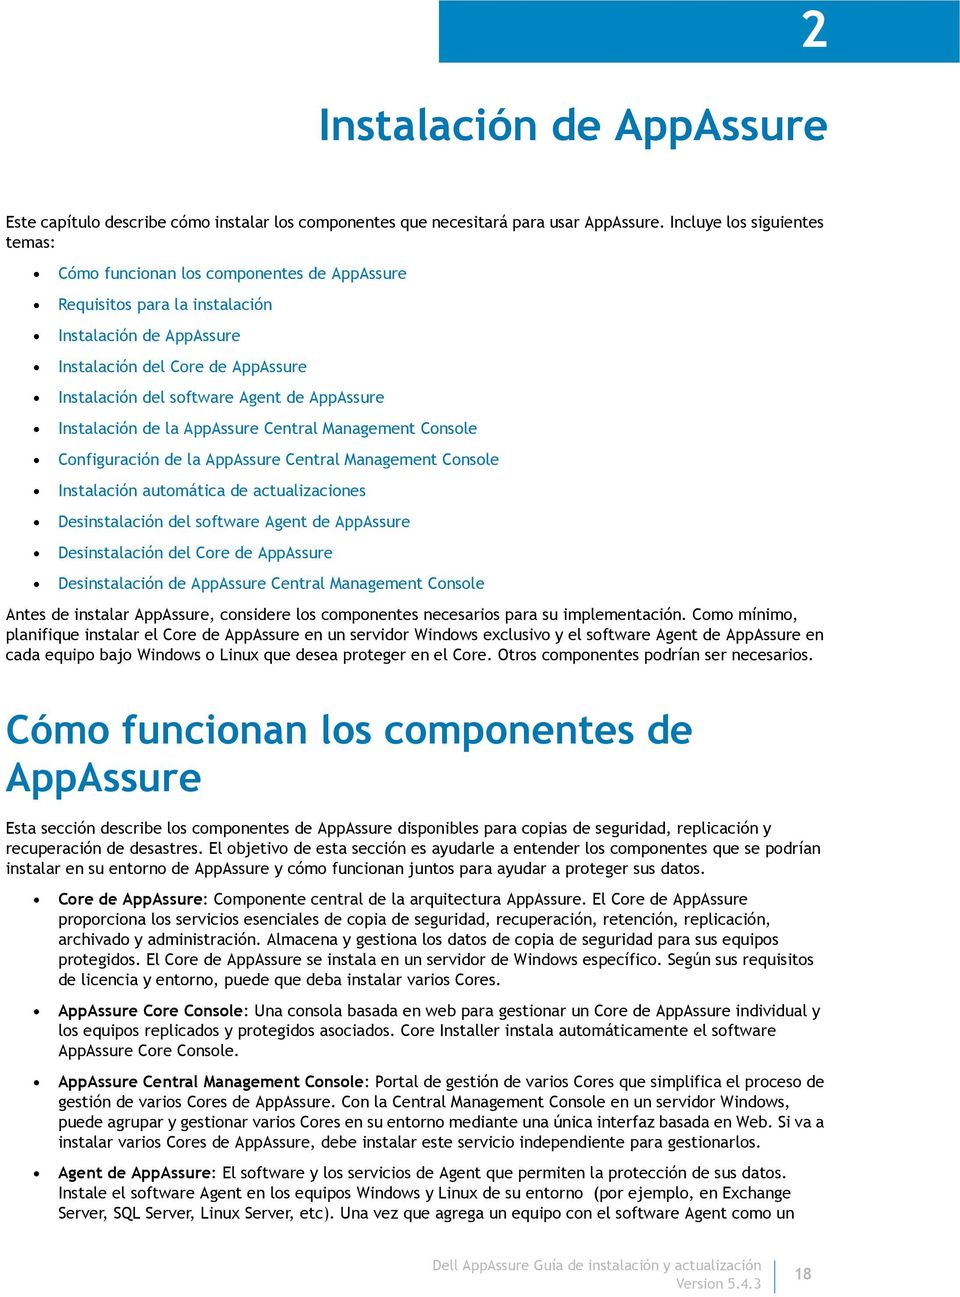 AppAssure Instalación de la AppAssure Central Management Console Configuración de la AppAssure Central Management Console Instalación automática de actualizaciones Desinstalación del software Agent